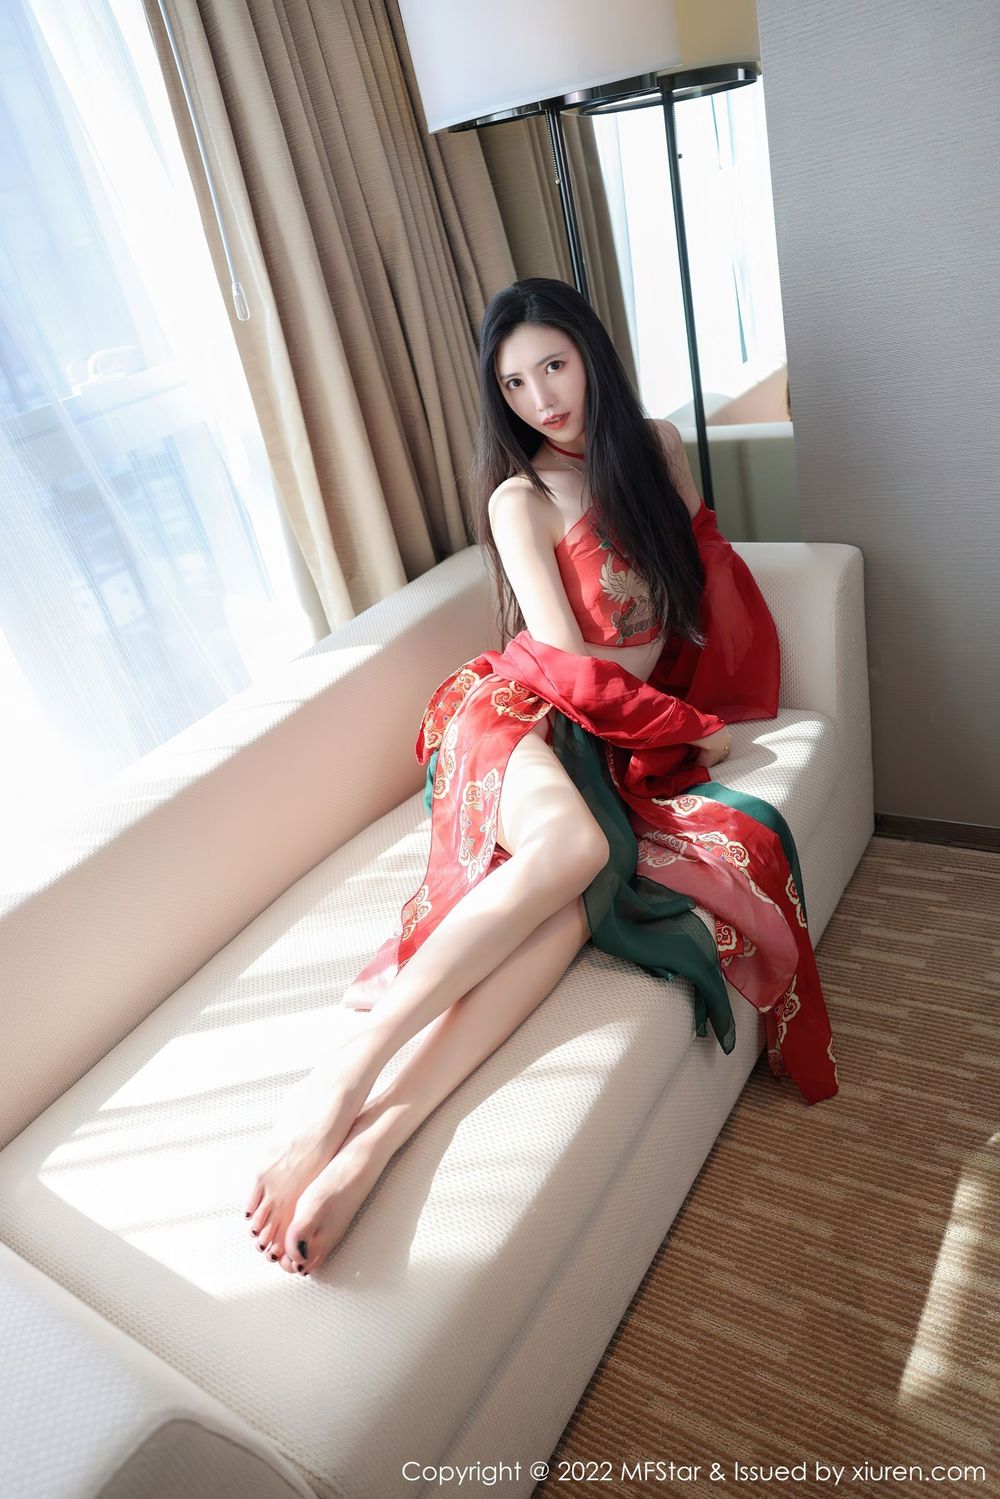 新人嫩模吴思晚 - 红色轻纱服饰+异域风情写真